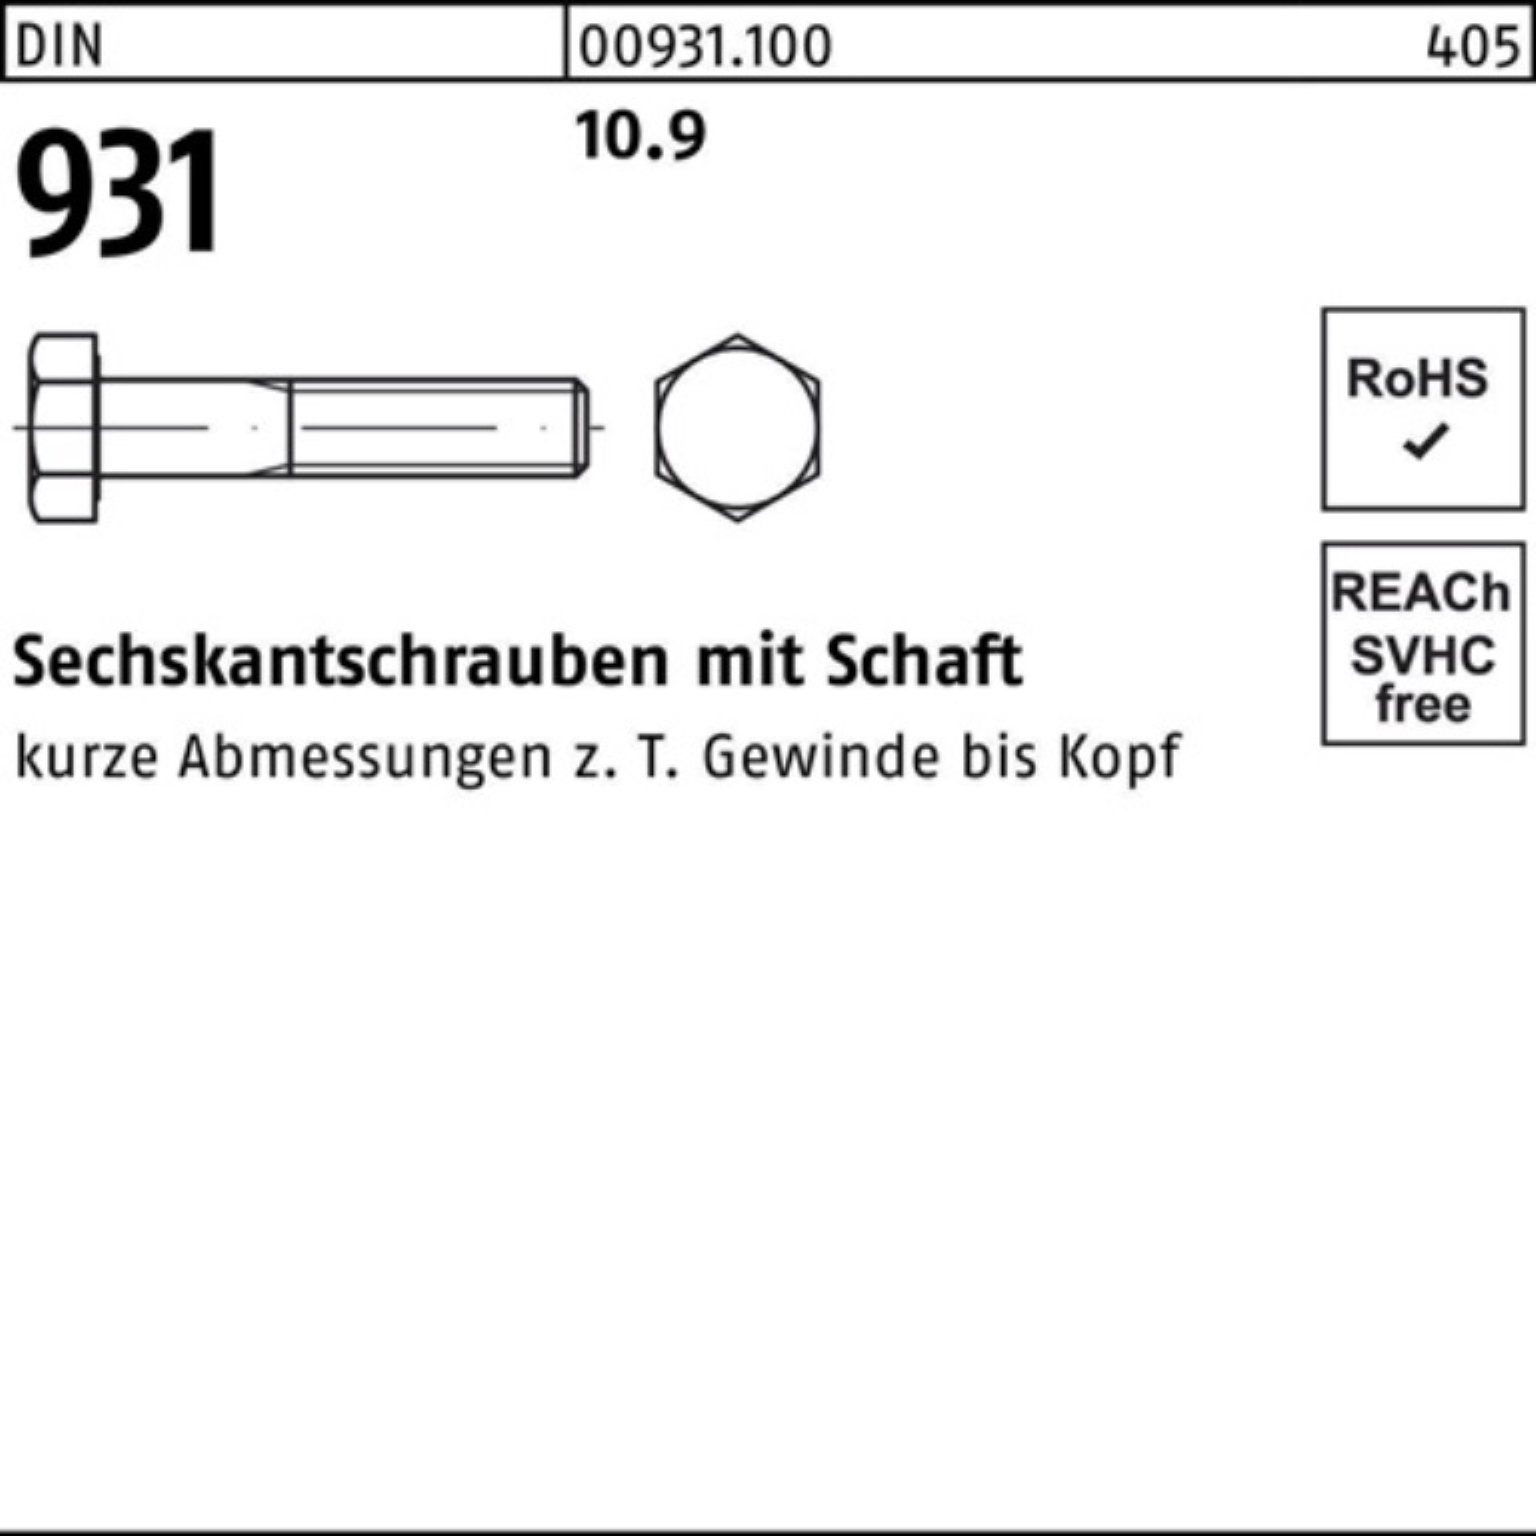 Reyher Sechskantschraube 100er 1 Stück Pack M30x DIN Schaft 931 Sechskantschraube 10.9 DIN 140